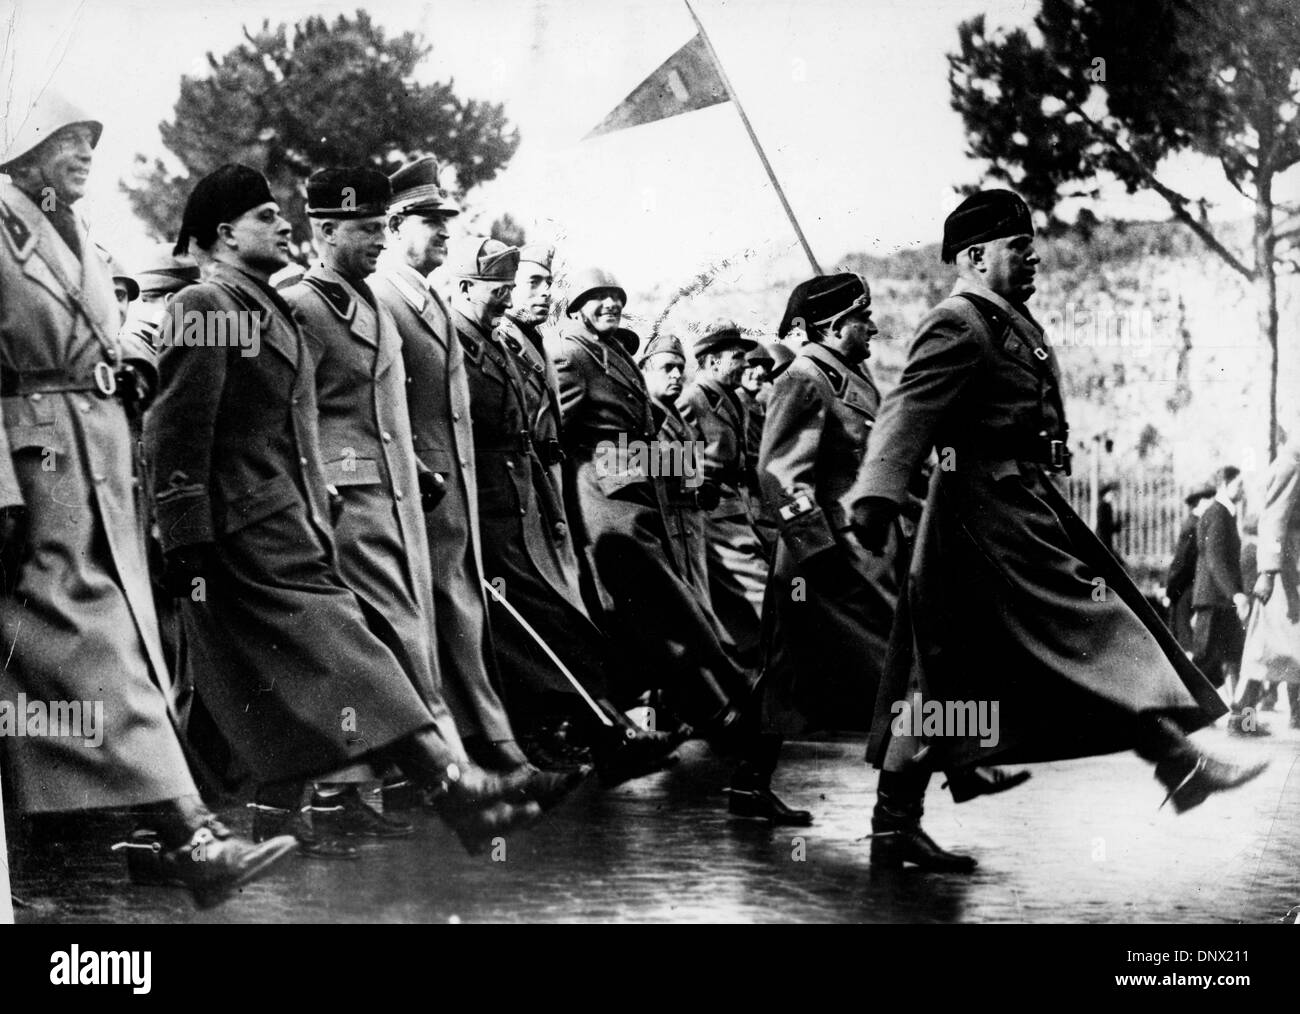 8 avril 1938 - Rome, Italie - Benito Mussolini (1883-1945) le dictateur italien et leader du mouvement fasciste italien une marche de l'unité d'artillerie. (Crédit Image : © Keystone Photos/ZUMAPRESS.com) Banque D'Images